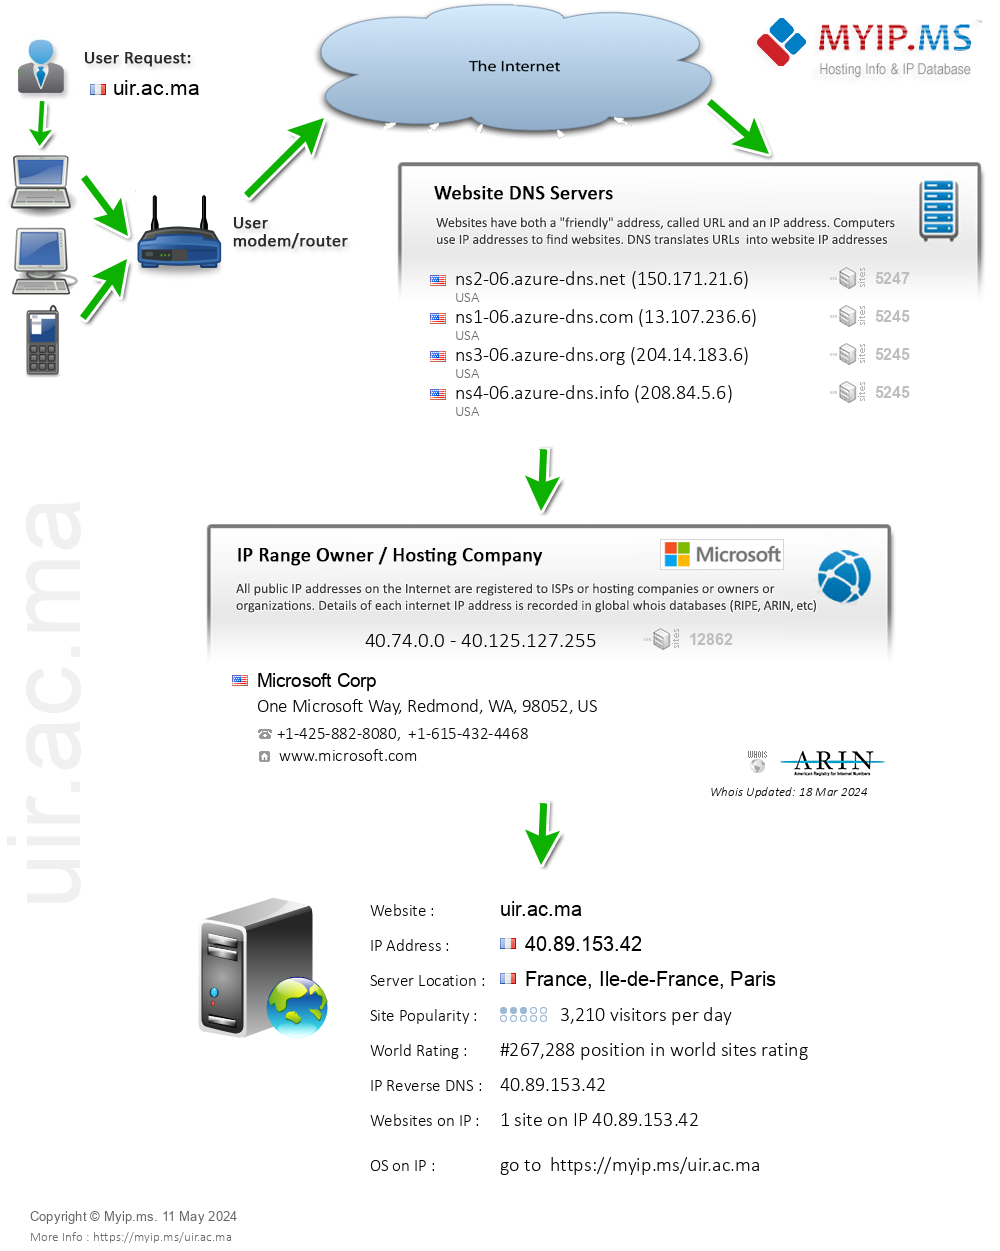 Uir.ac.ma - Website Hosting Visual IP Diagram